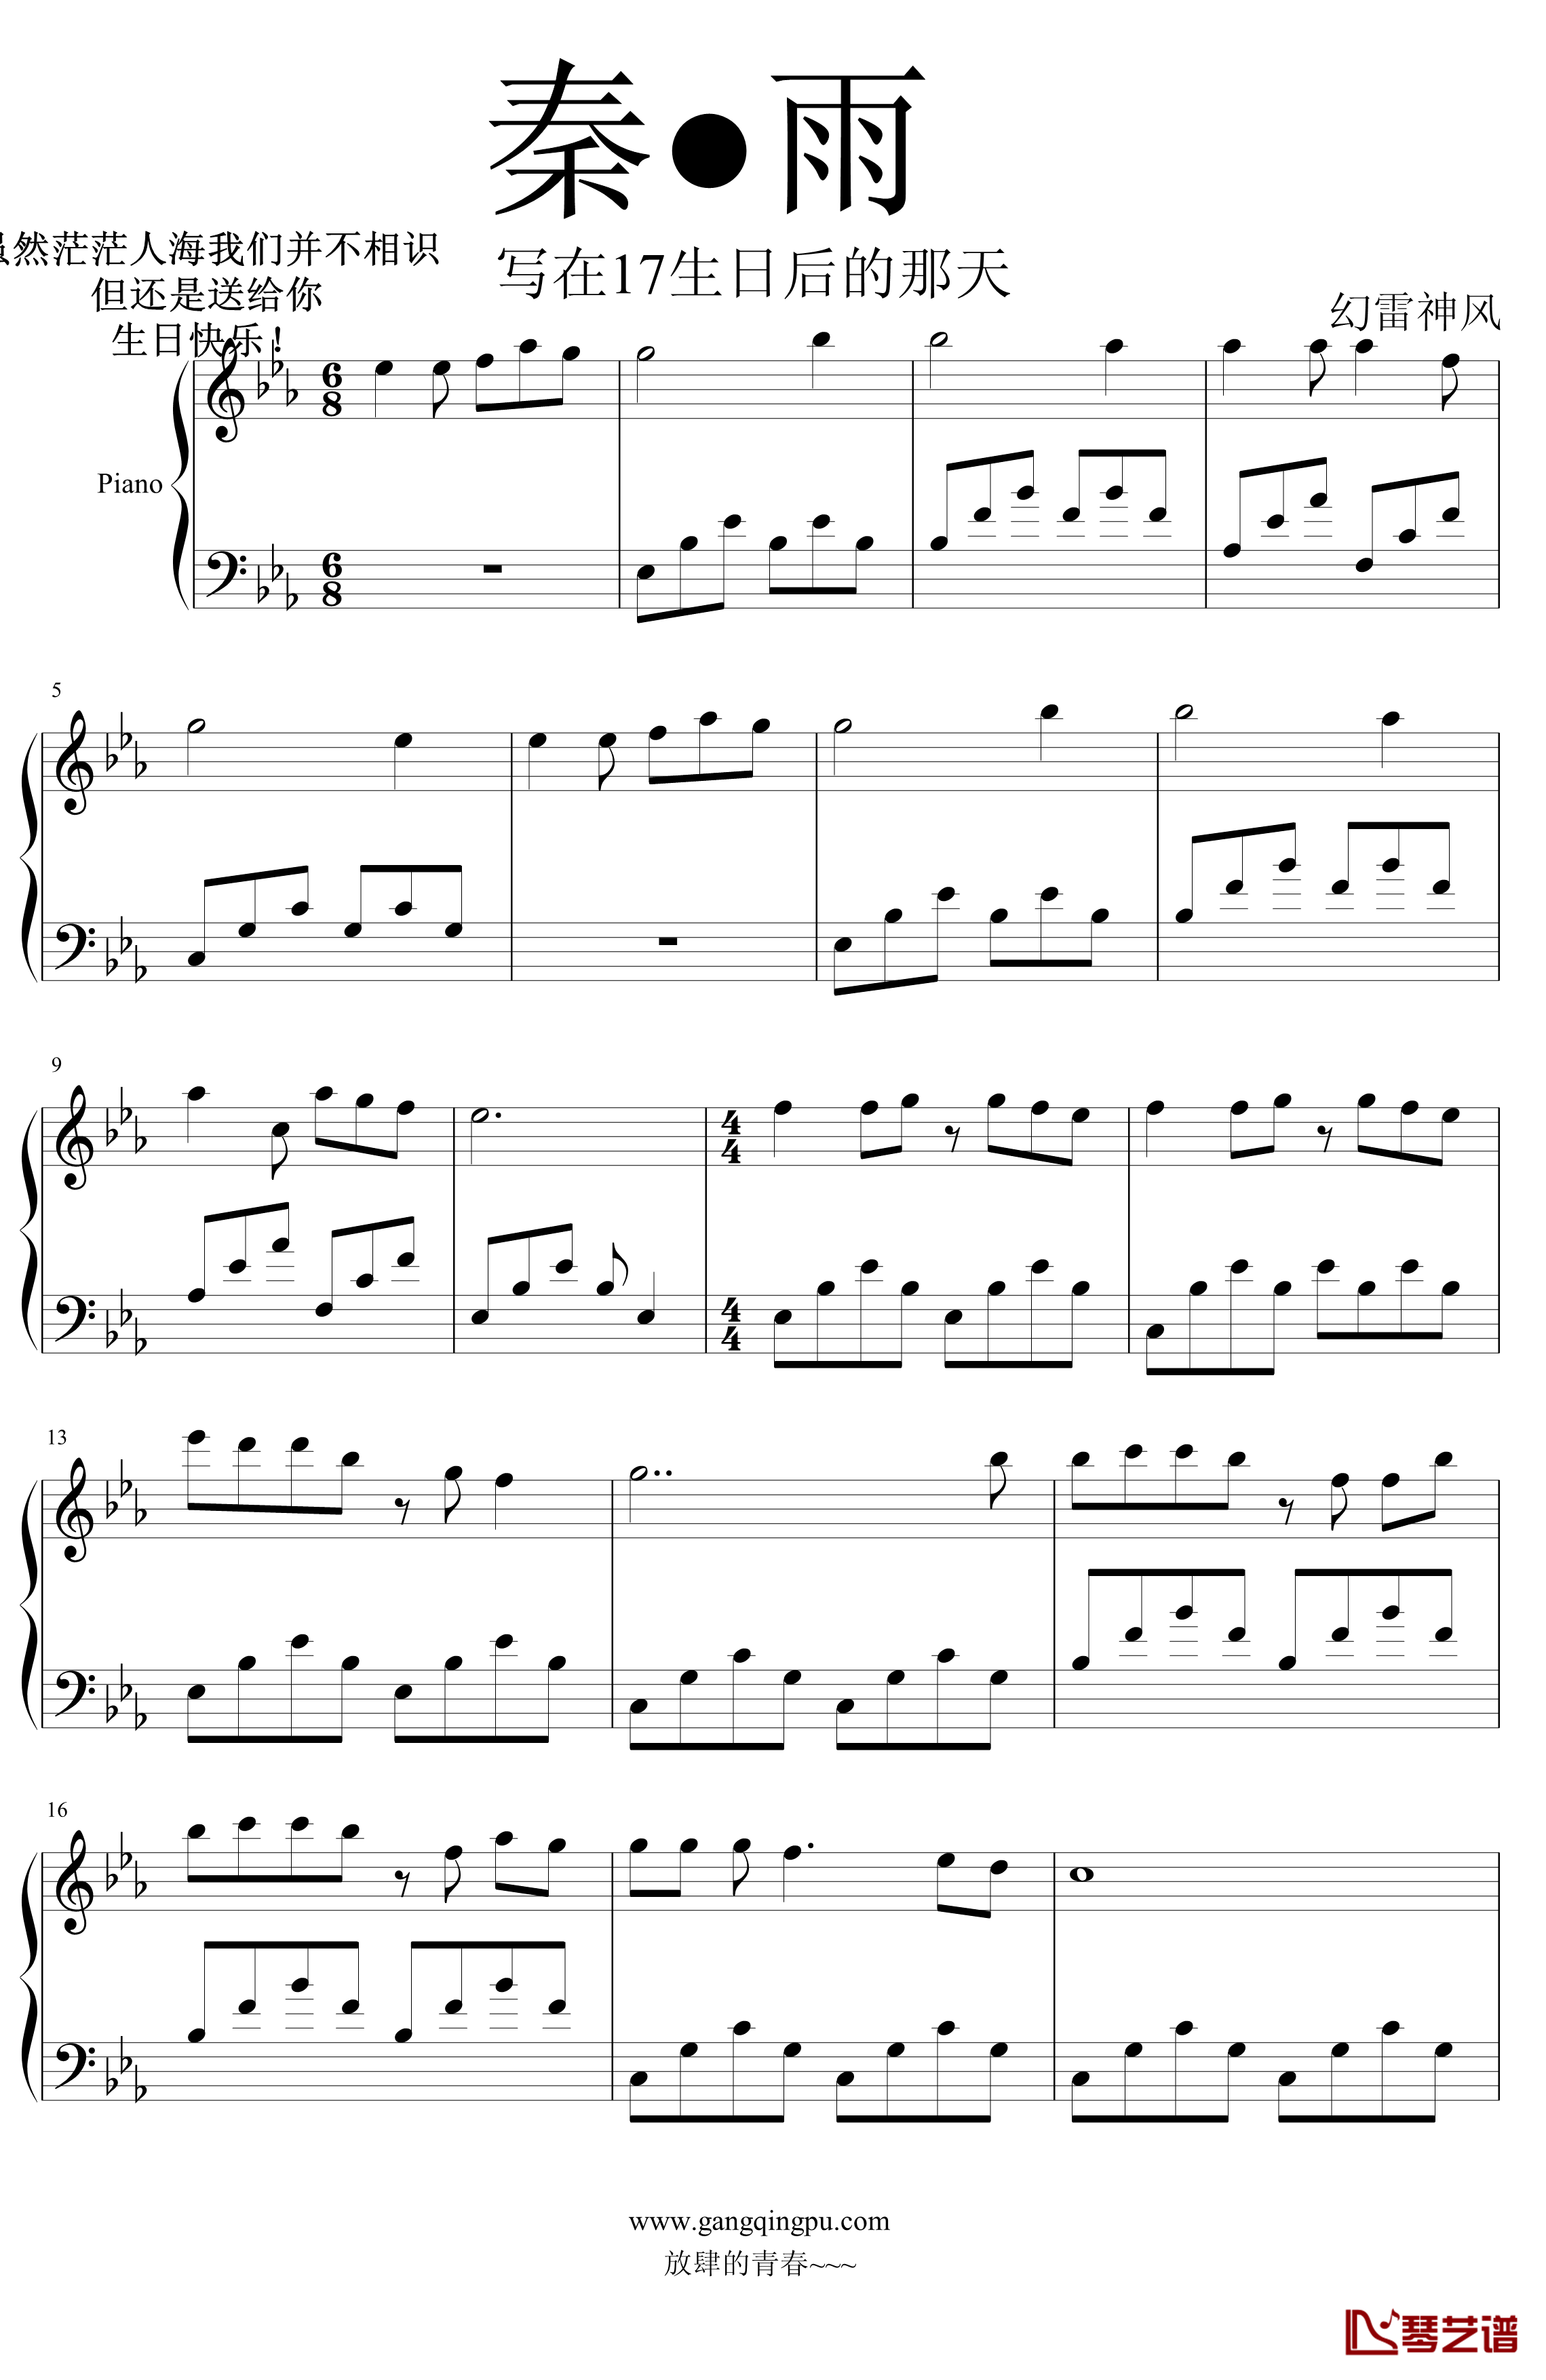 秦●雨钢琴谱-wazhlsf1